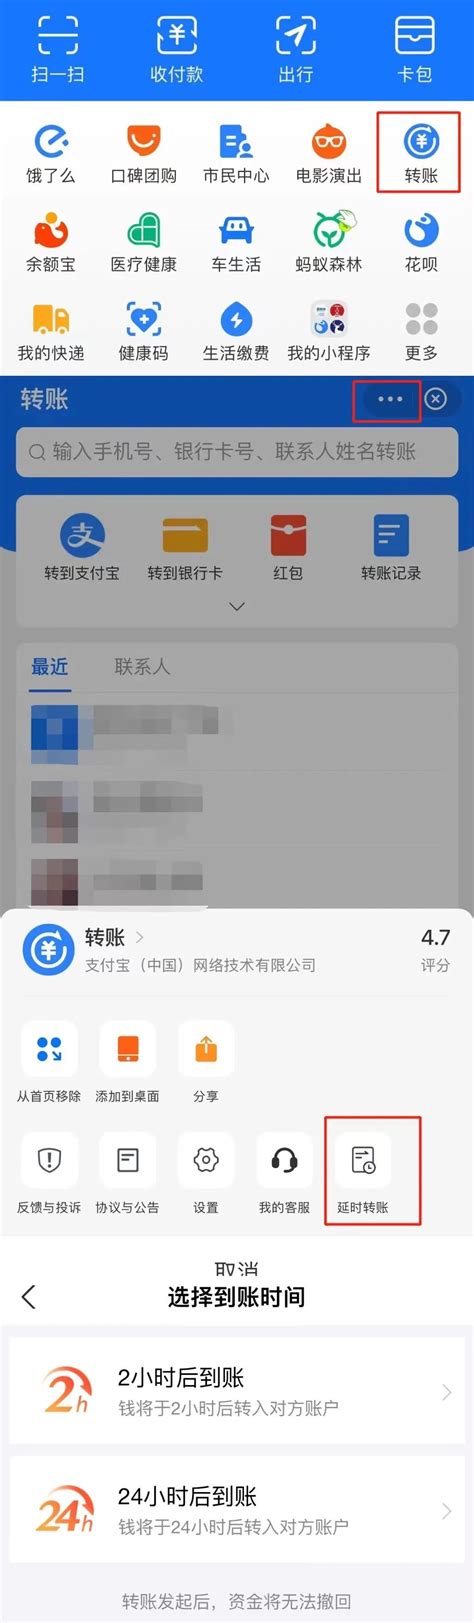 手机点菜宝app下载排行榜2022 好用的手机点菜宝软件下载推荐_豌豆荚